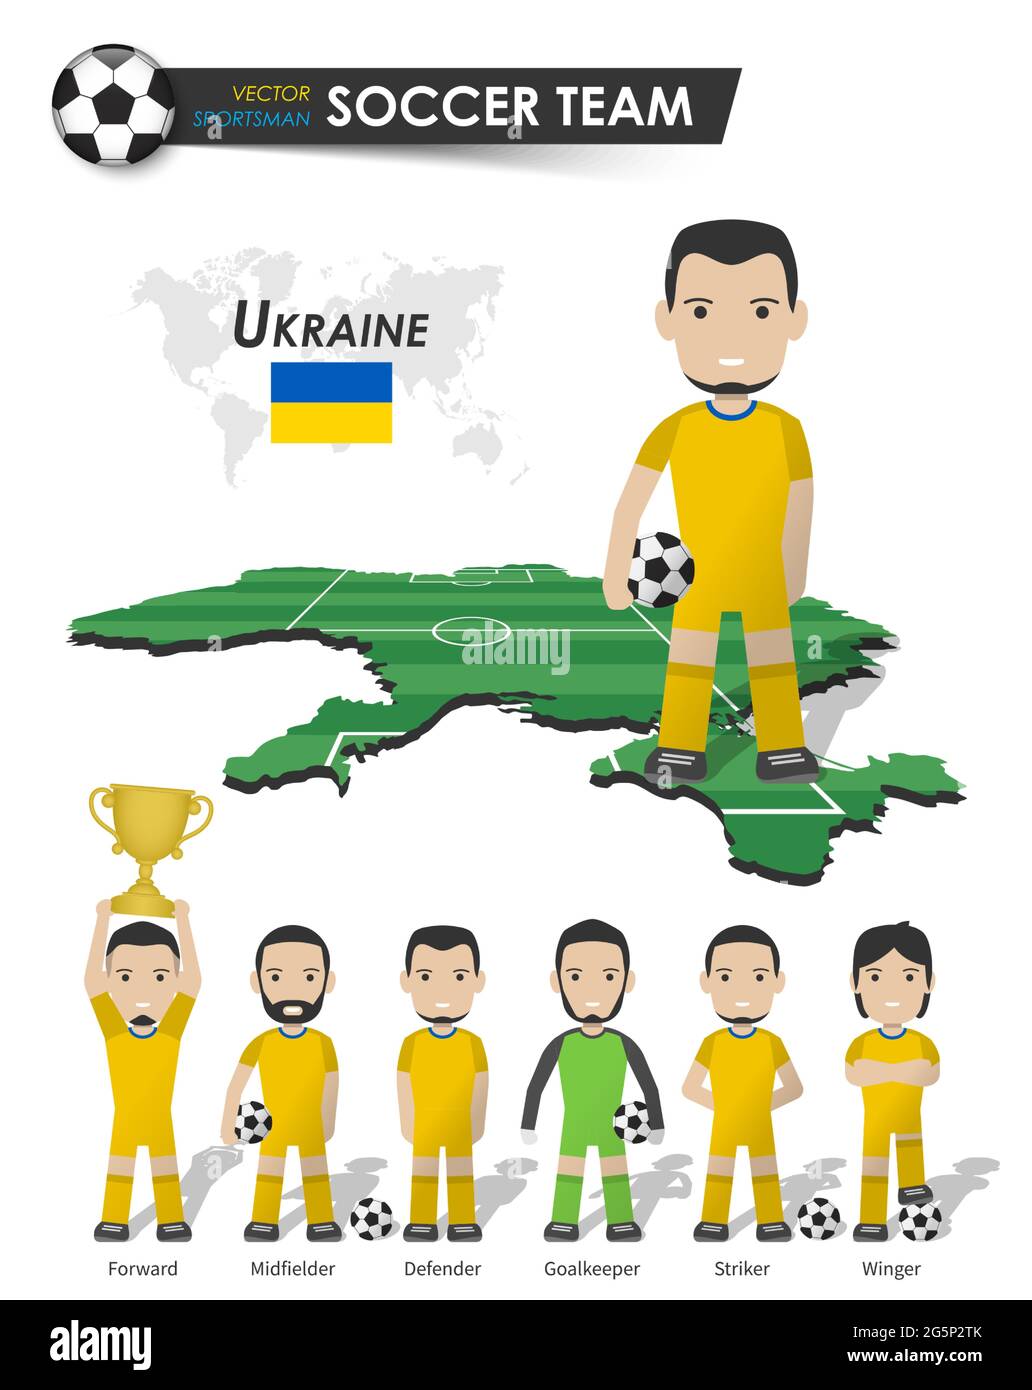 Ukrainische Fußballnationalmannschaft . Fußballspieler mit Sporttrikot  stehen auf Perspective Field Country Map und Weltkarte . Set von Fußballern  Positio Stock-Vektorgrafik - Alamy